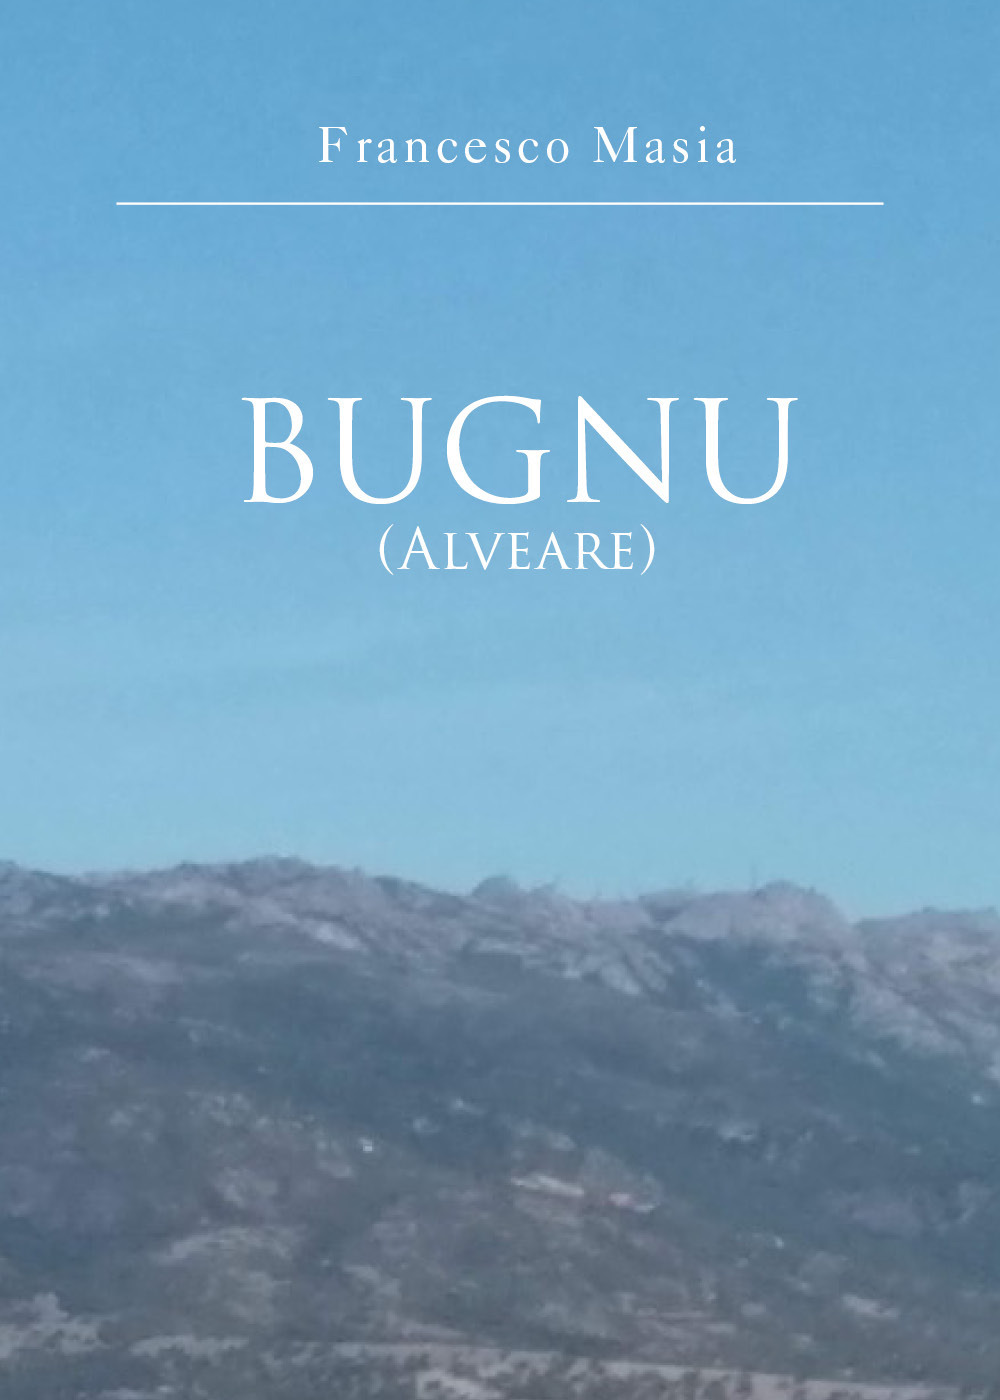 Bugno (alveare)